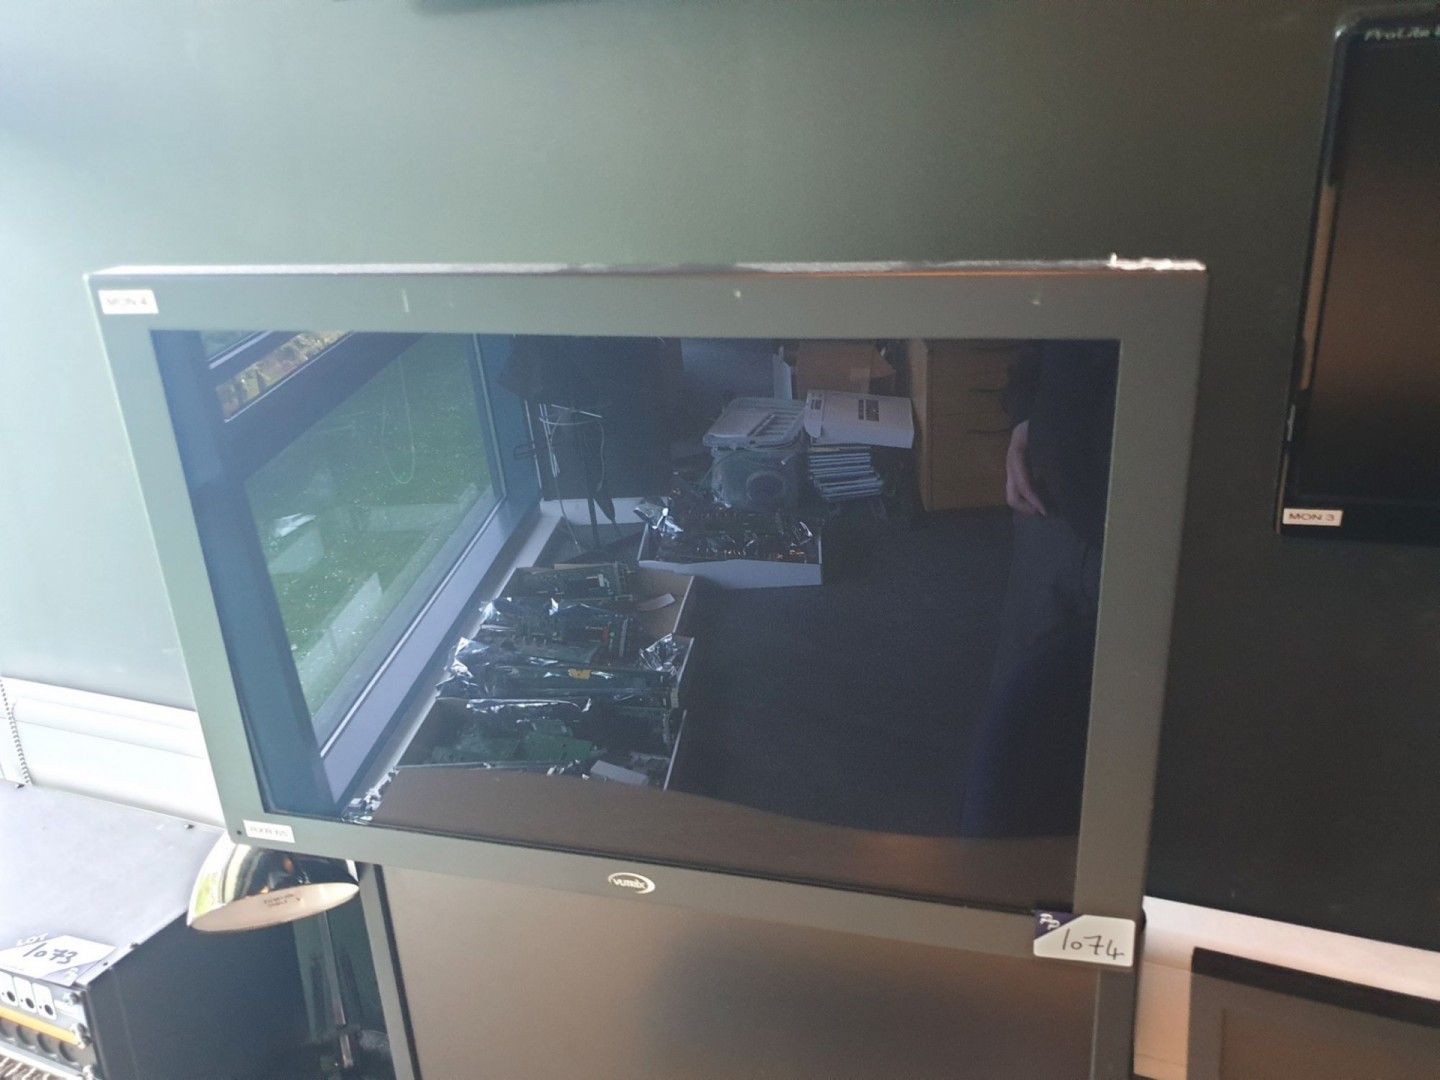 Vutrix 23HD quad monitor